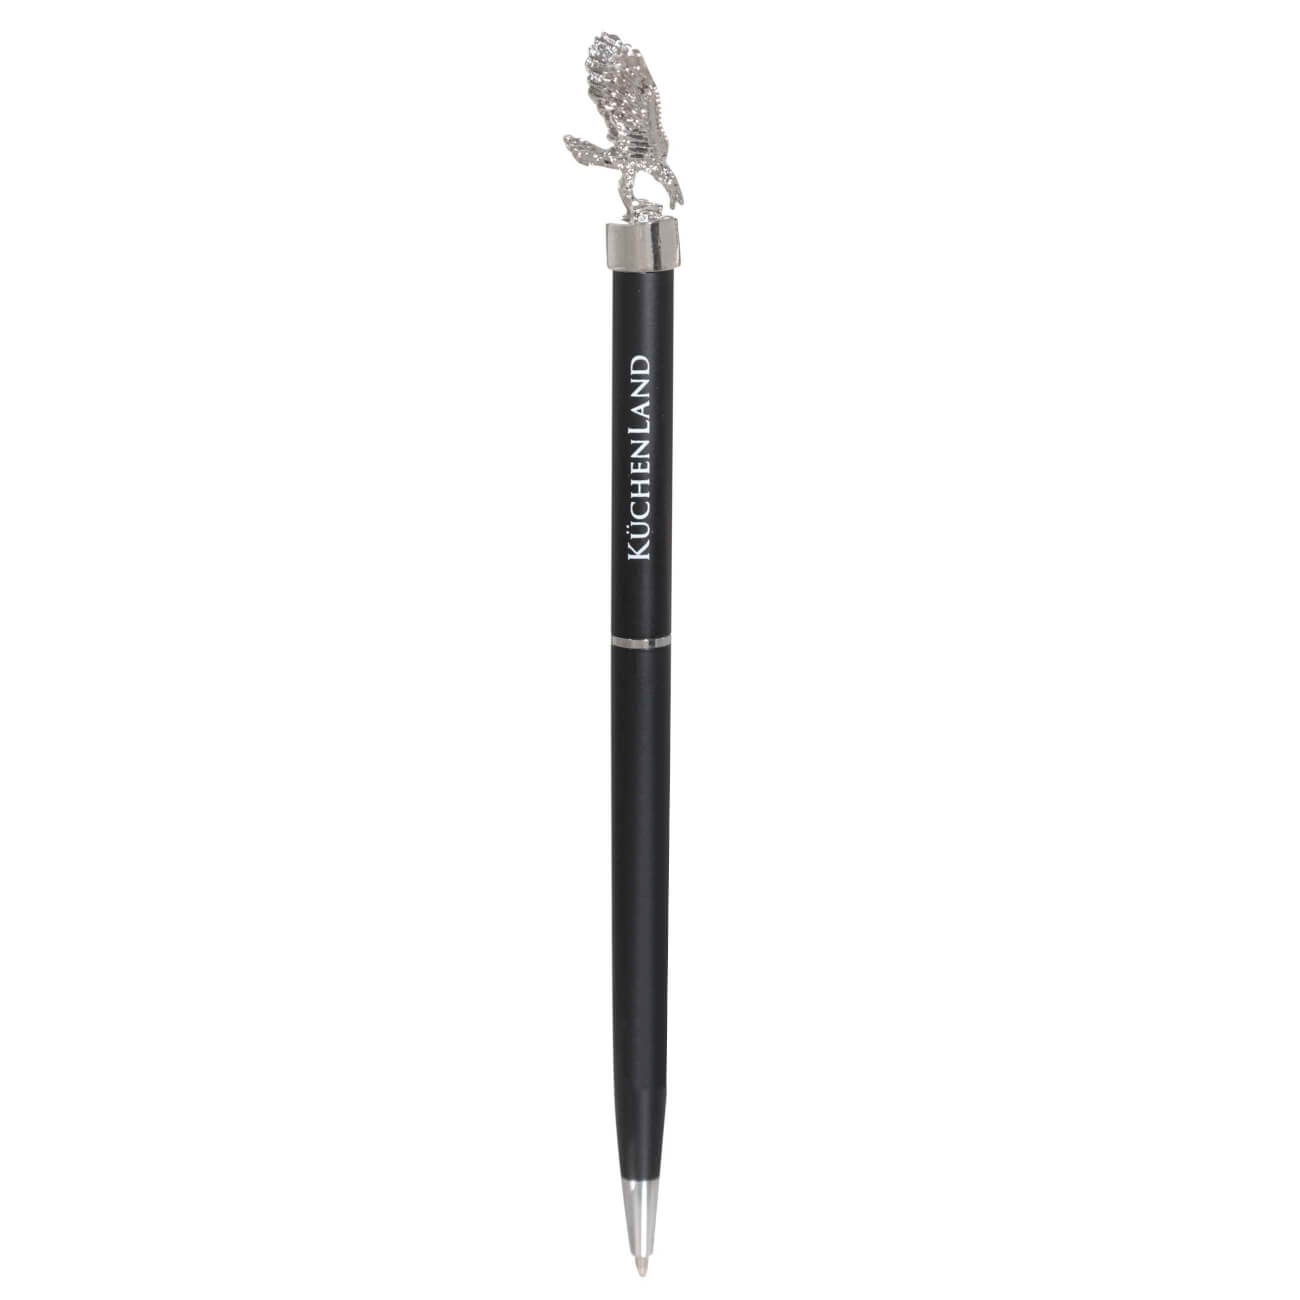 карандаш 18 см чернографитный с фигуркой сова draw figure Ручка шариковая, 15 см, с фигуркой, сталь, черная, Орел, Draw figure